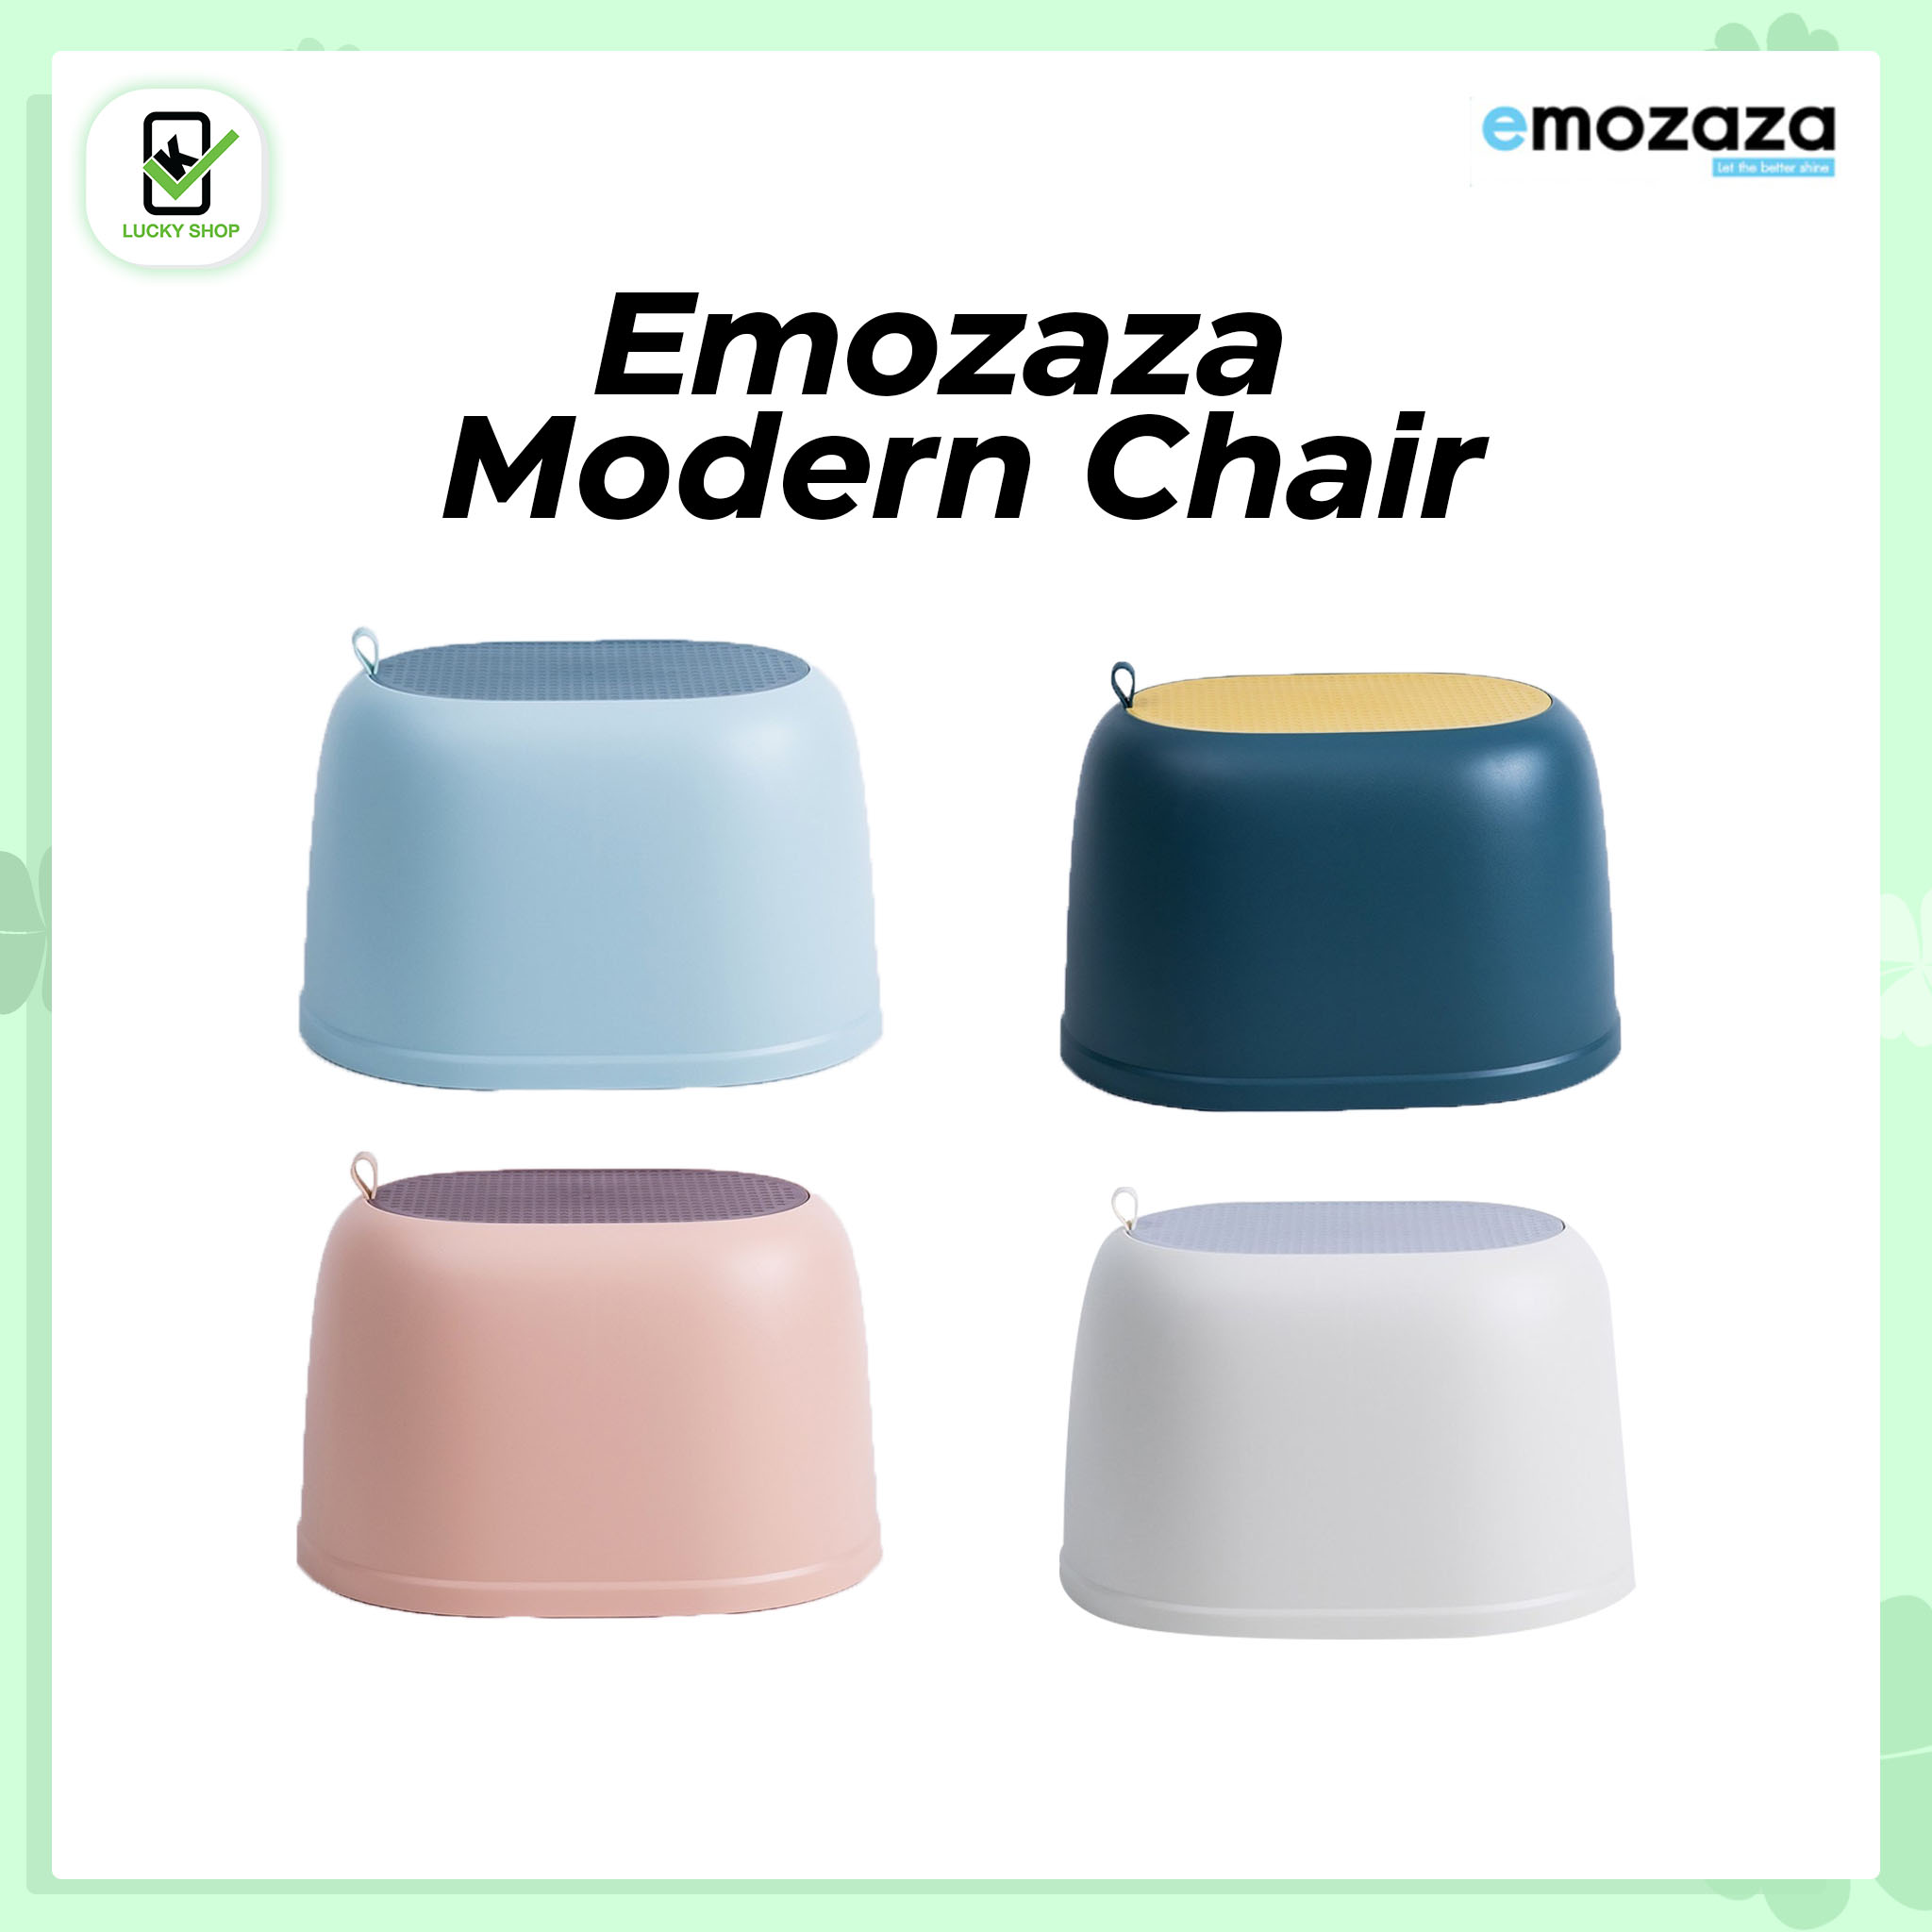 EMOZAZA เก้าอี้สำหรับใช้ในห้องน้ำสามารถรับน้ำหนักได้ถึง 100กก. หูจับซิลิโคนง่ายต่อการเคลื่อนย้าย กันน้ำ